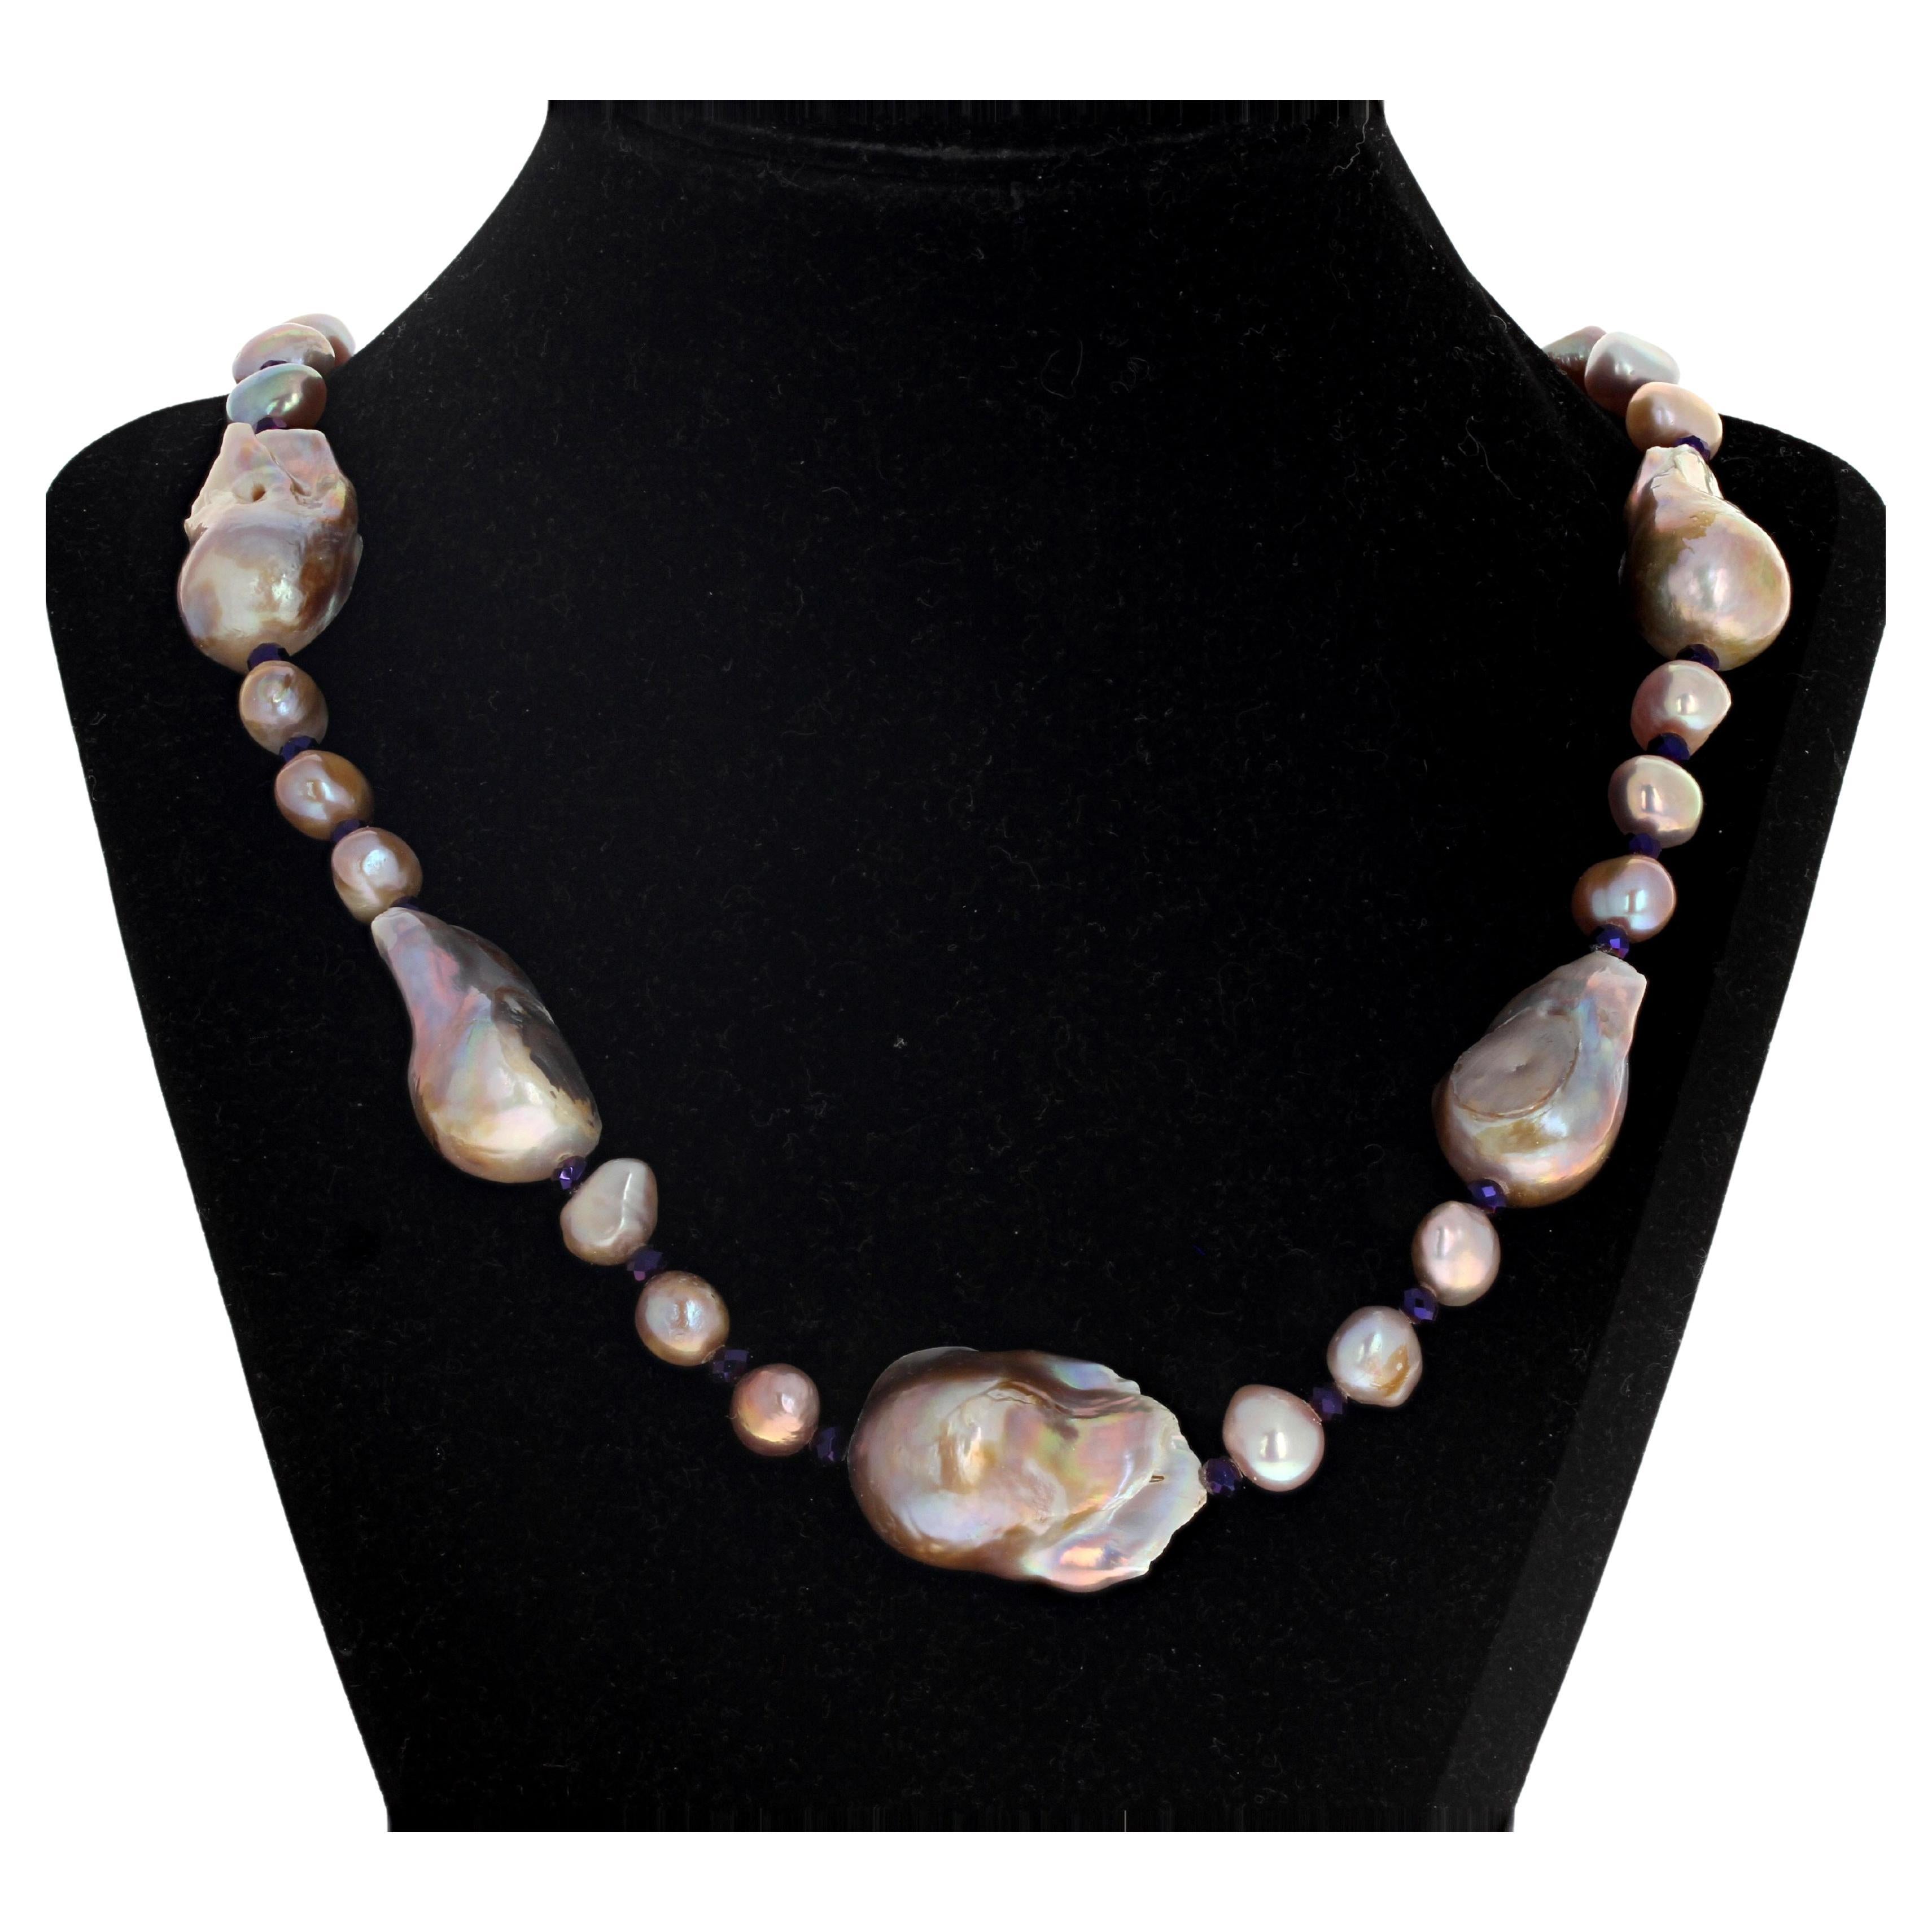 Ce collier mesure 20 pouces de long et les perles sont absolument magnifiques dans leurs vrais reflets multicolores ! !!  Les plus grandes mesurent environ 30 mm de long.  Les plus petits mesurent environ 10 mm.  Le collier mesure 20 pouces de long